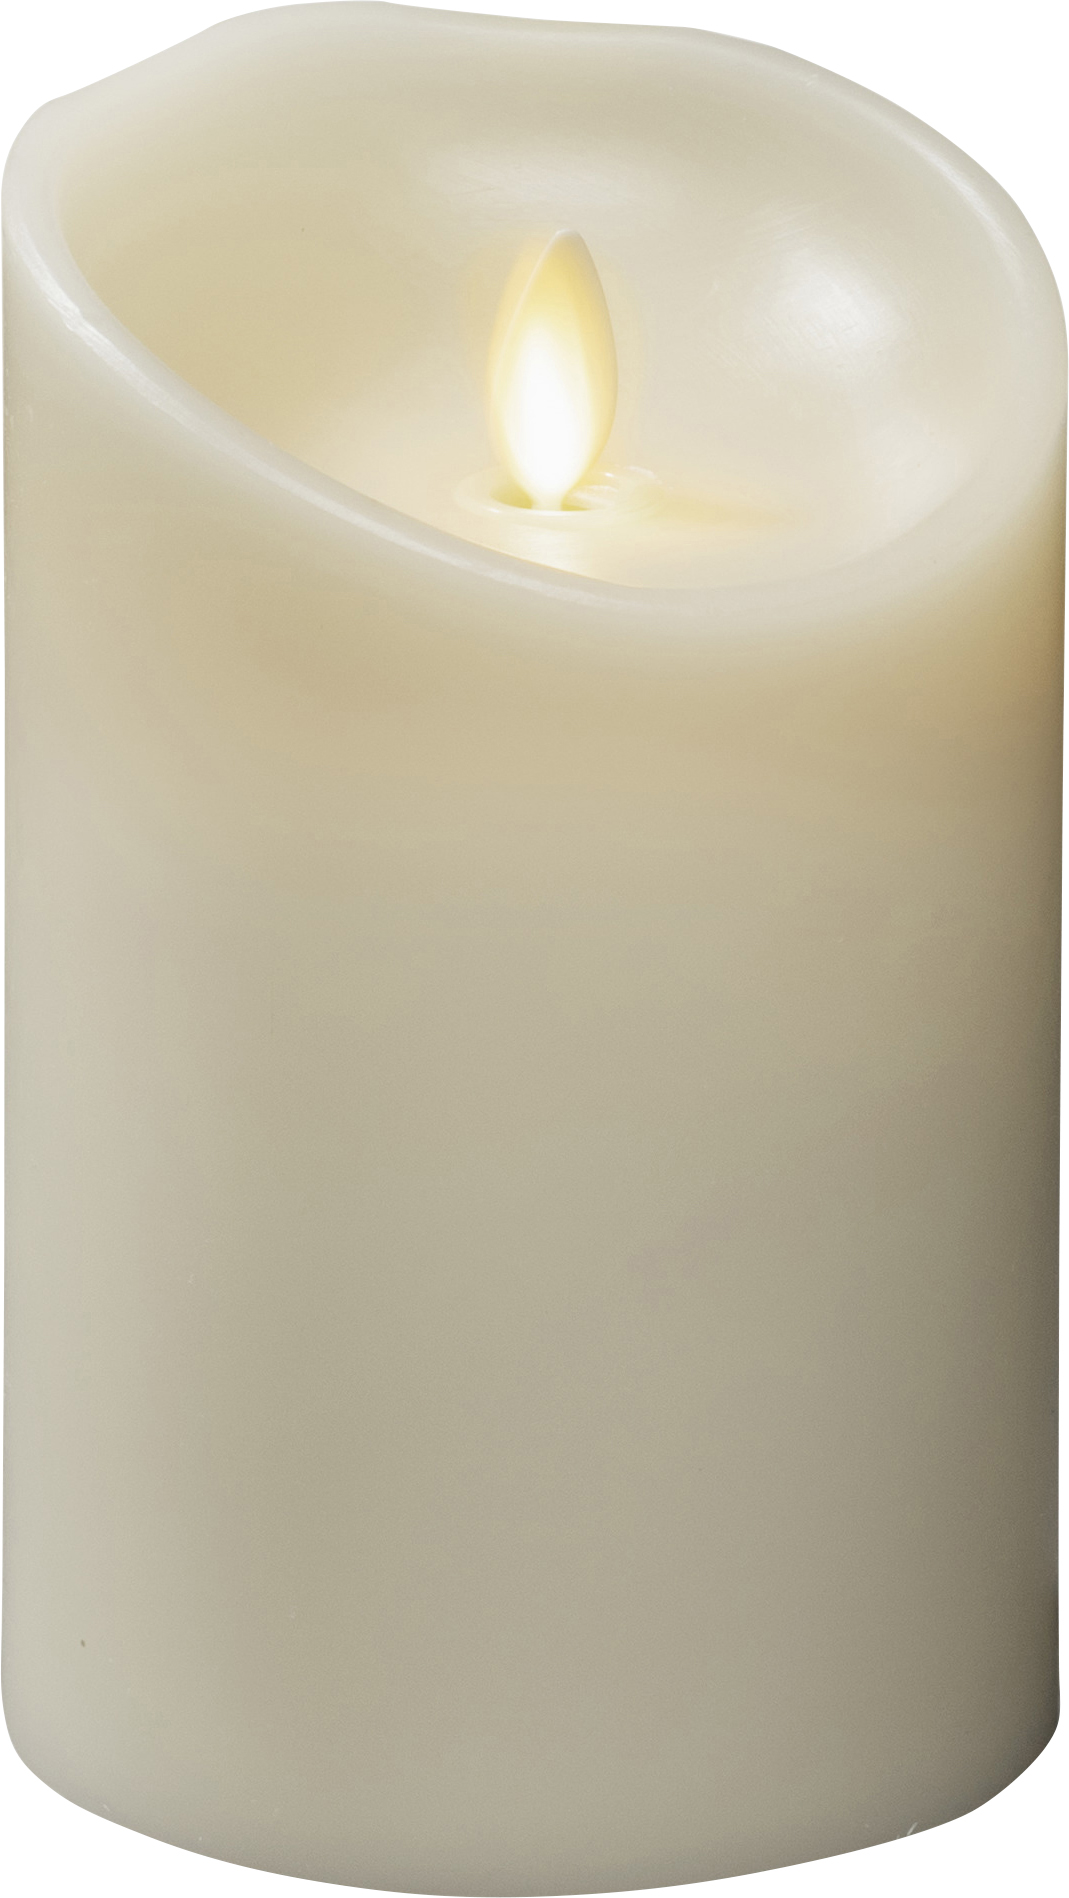 Konstsmide 1612-115 Bougie en cire véritable à LED blanc crème blanc chaud (Ø x H) 88 mm x 134 mm